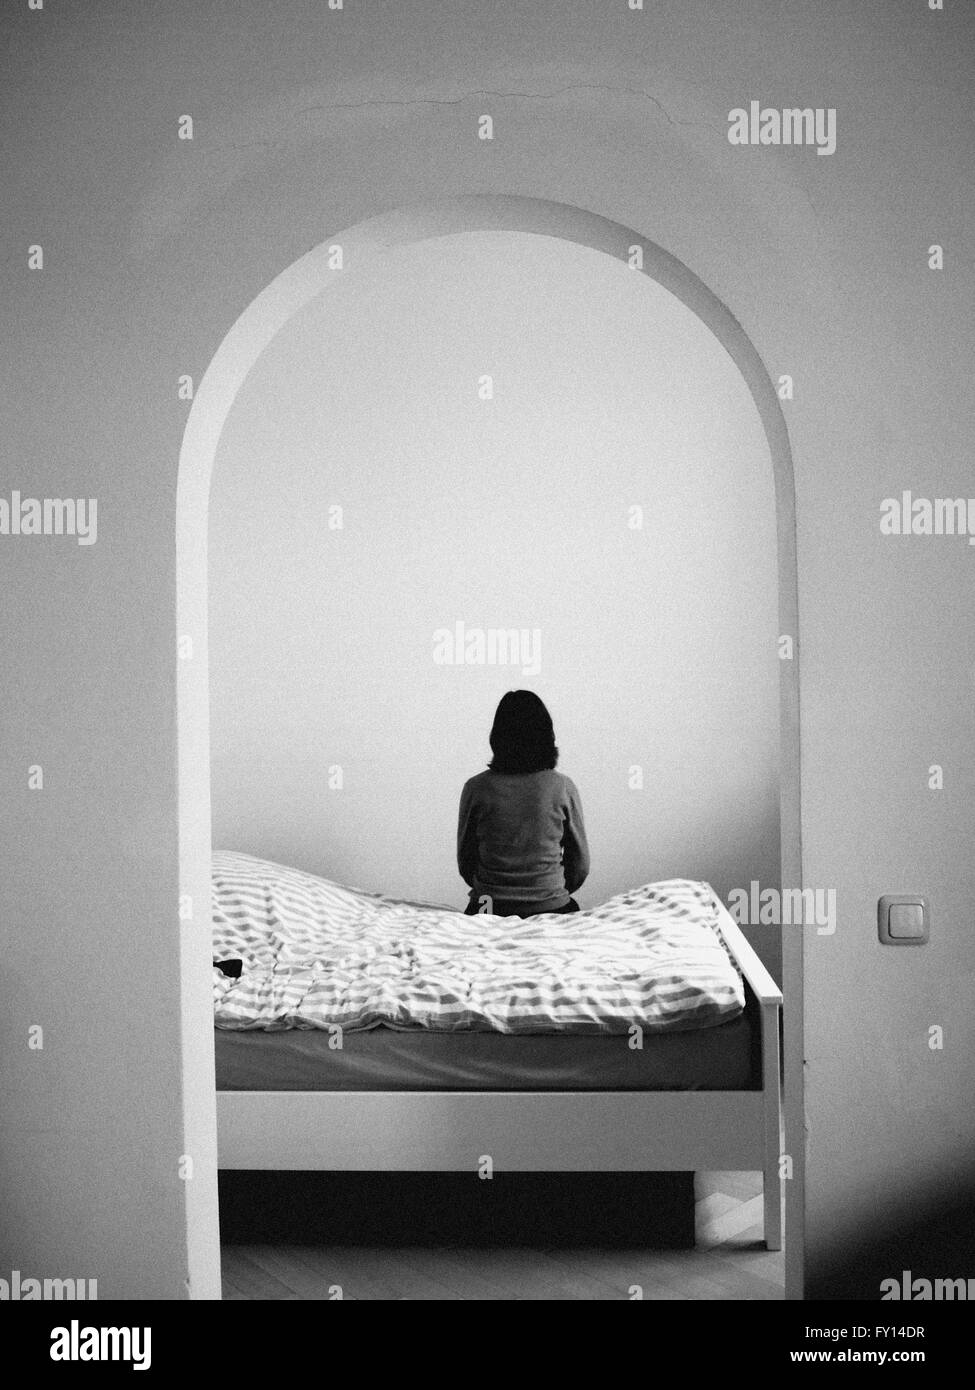 Vista trasera de una mujer sentada sobre una cama Foto de stock